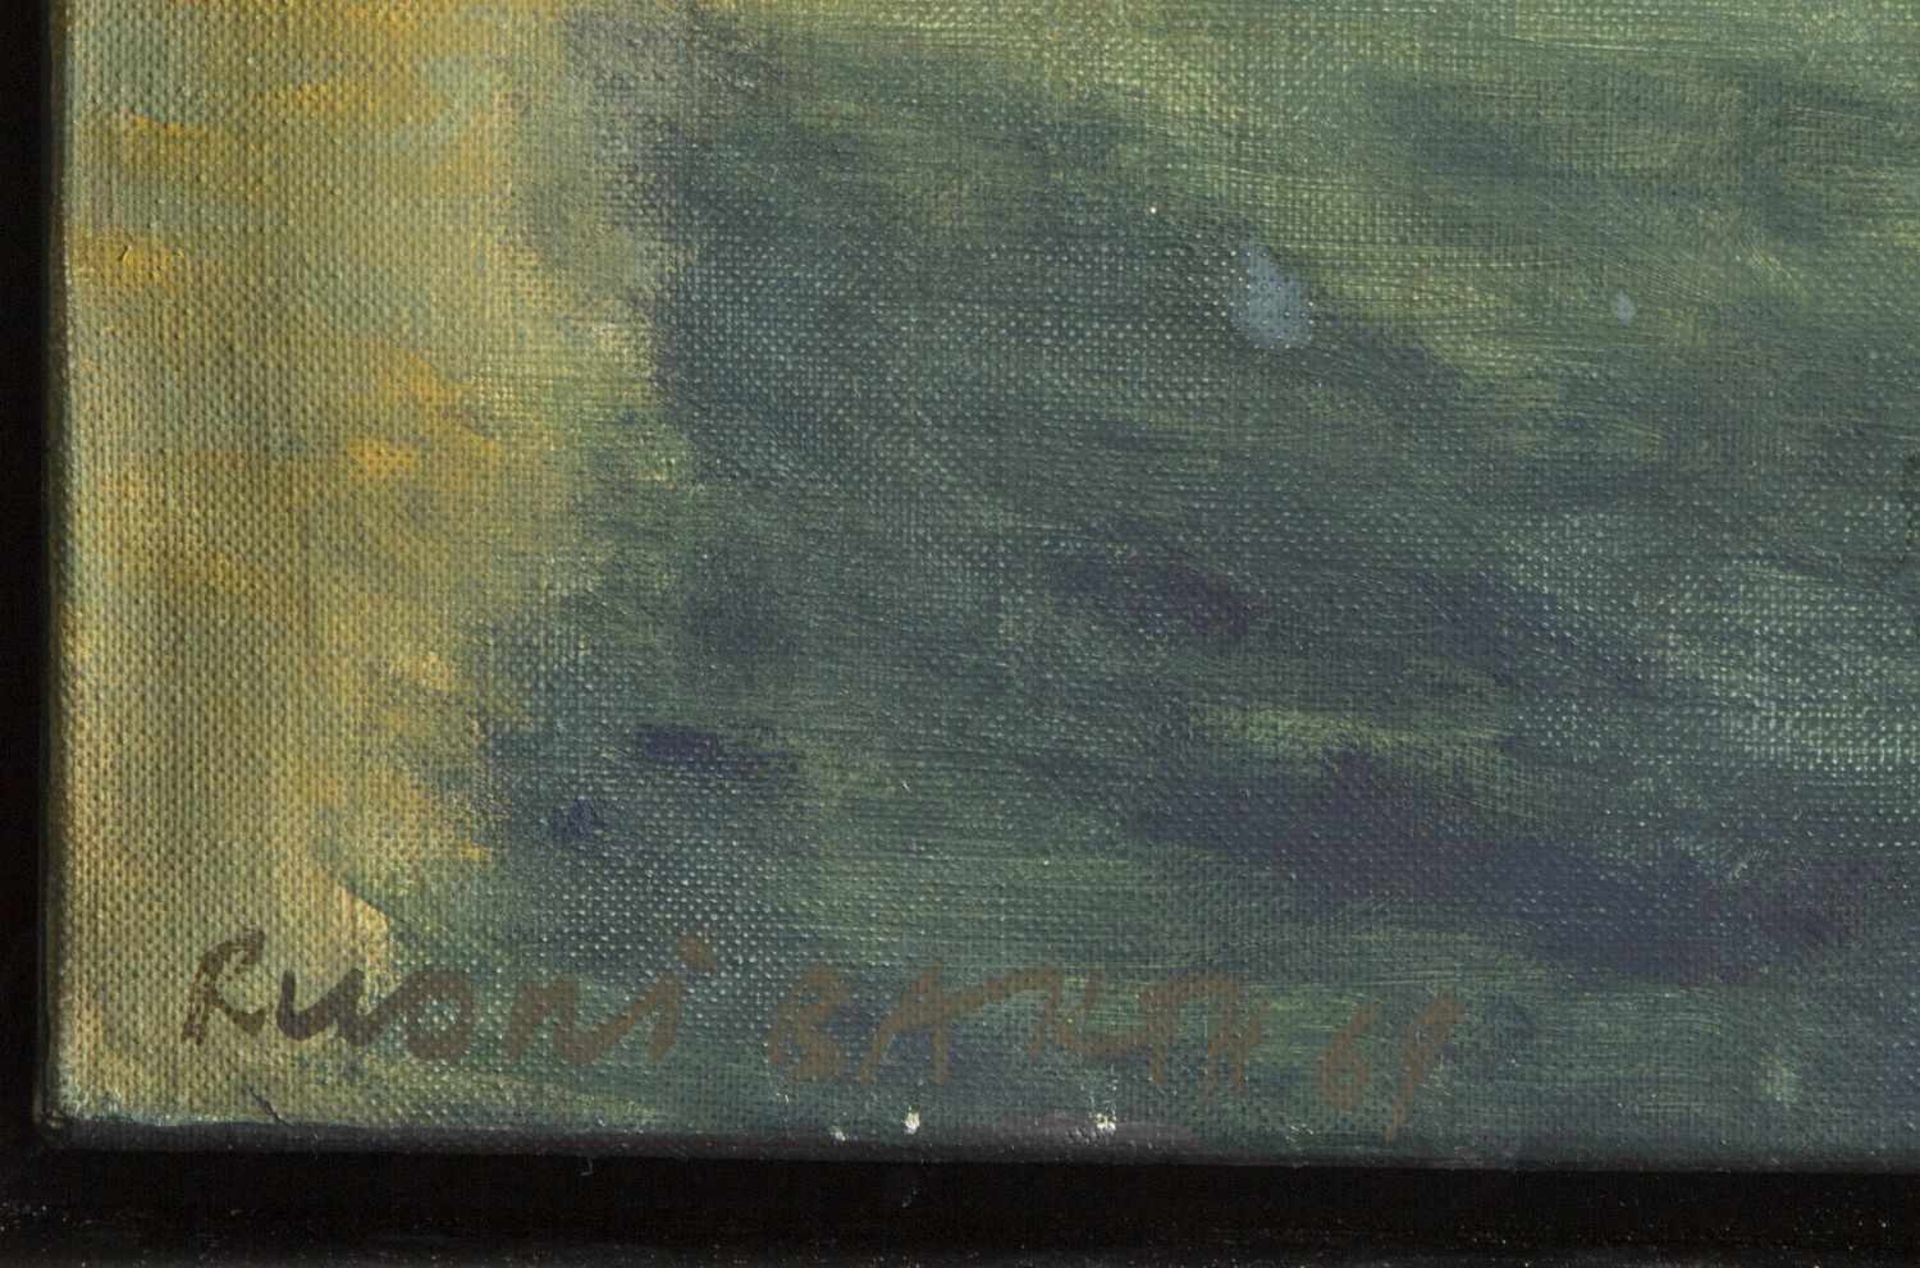 Barth, RuoniLandschaft mit einem Weiler. Öl/Lwd. Sign. und dat. (19)69. 70 x 100,5 cm. - Bild 2 aus 3